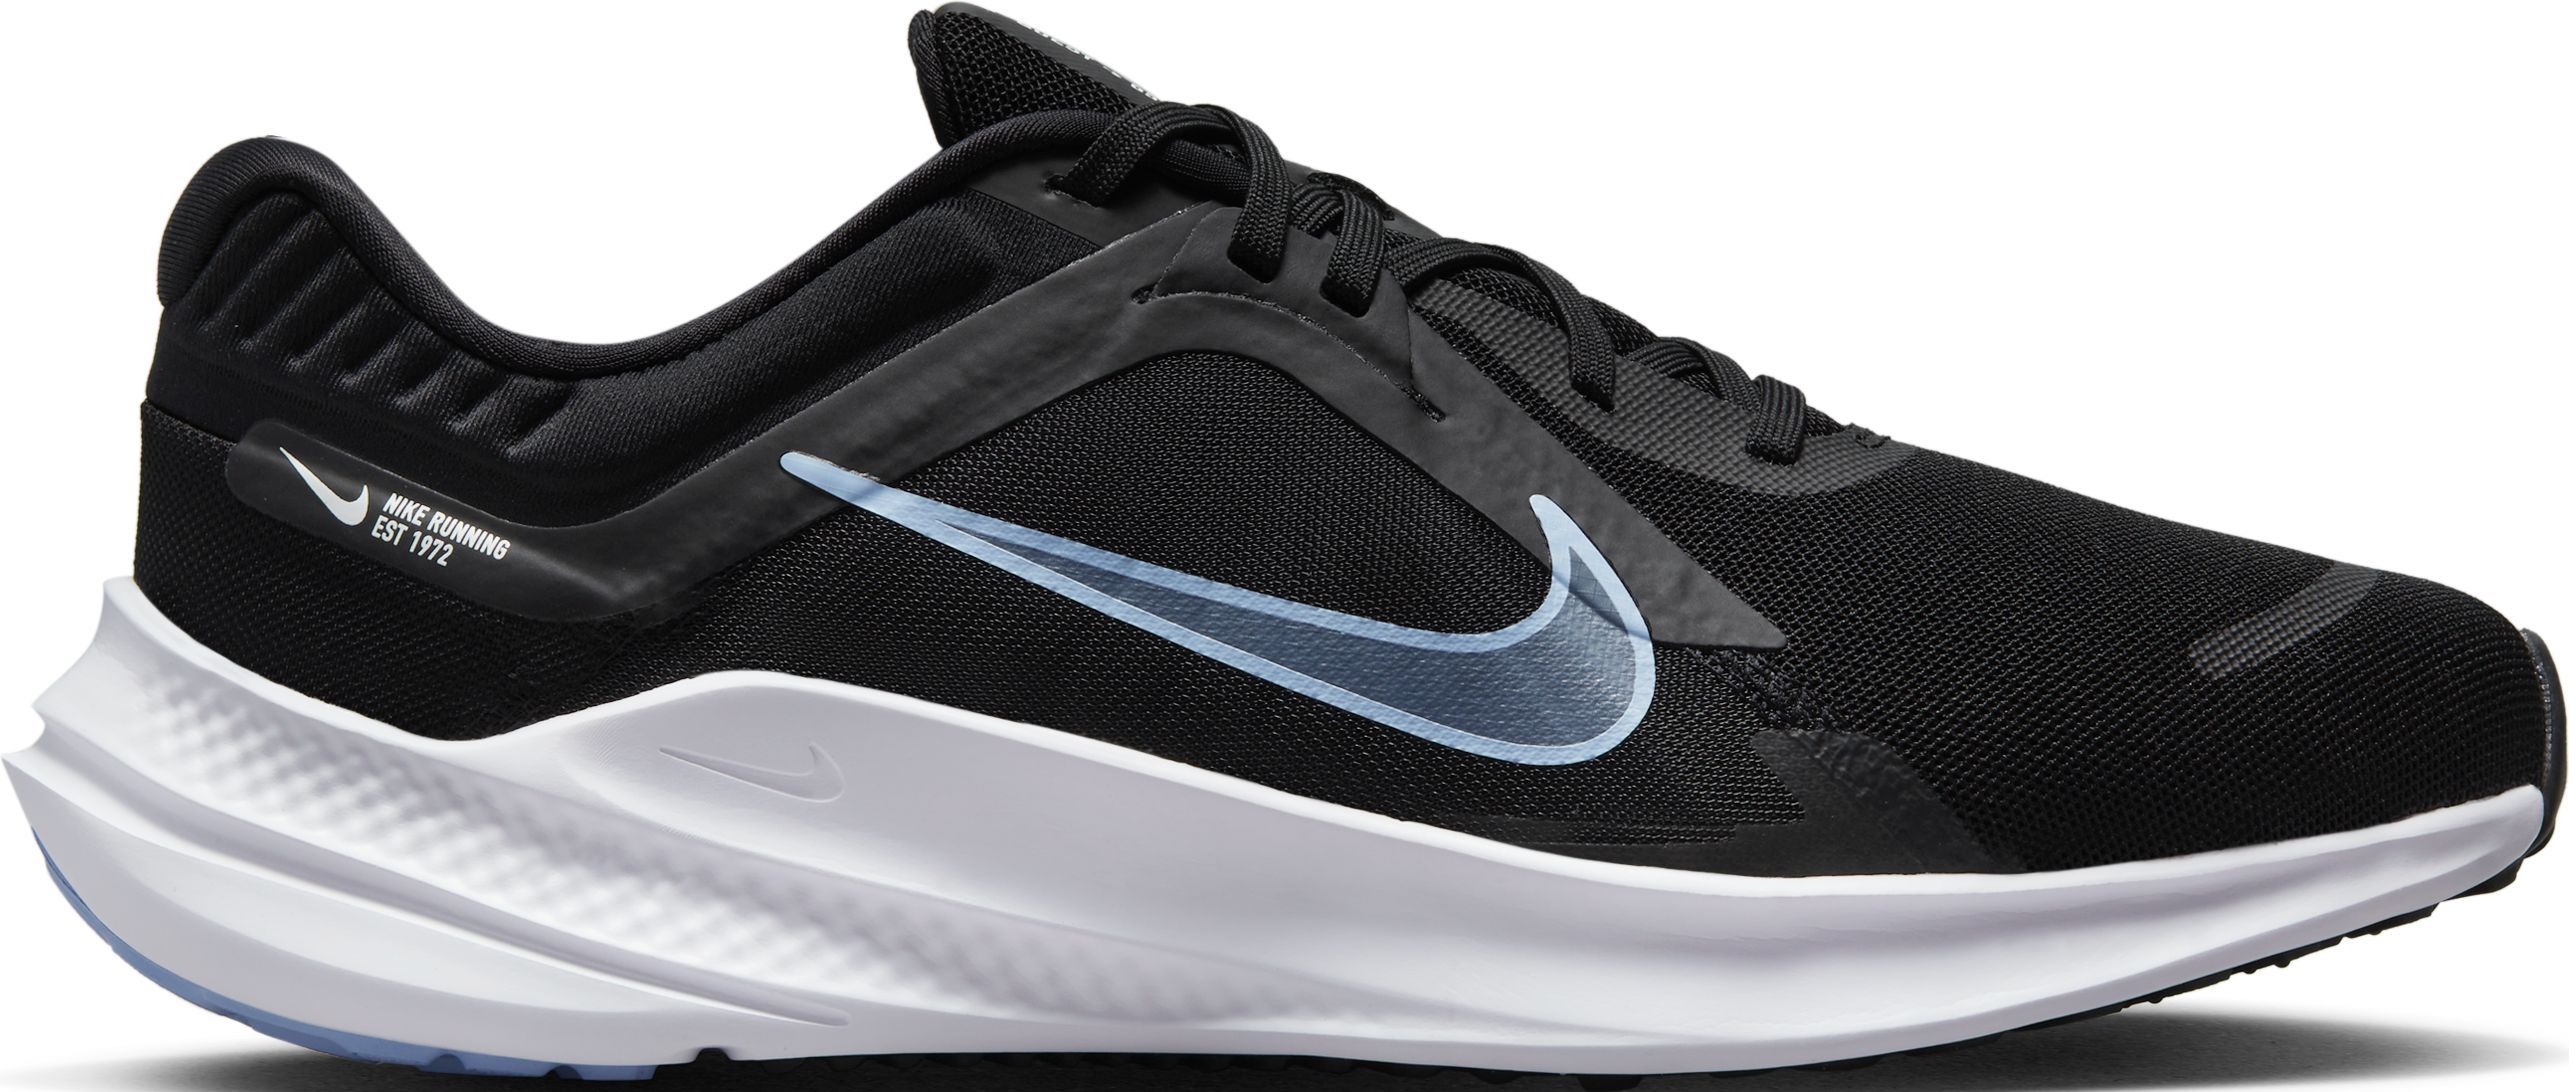 Coche diario diferente a Nike Quest 5 Tenis negro de hombre para correr Referencia : DD0204-006 -  prochampions